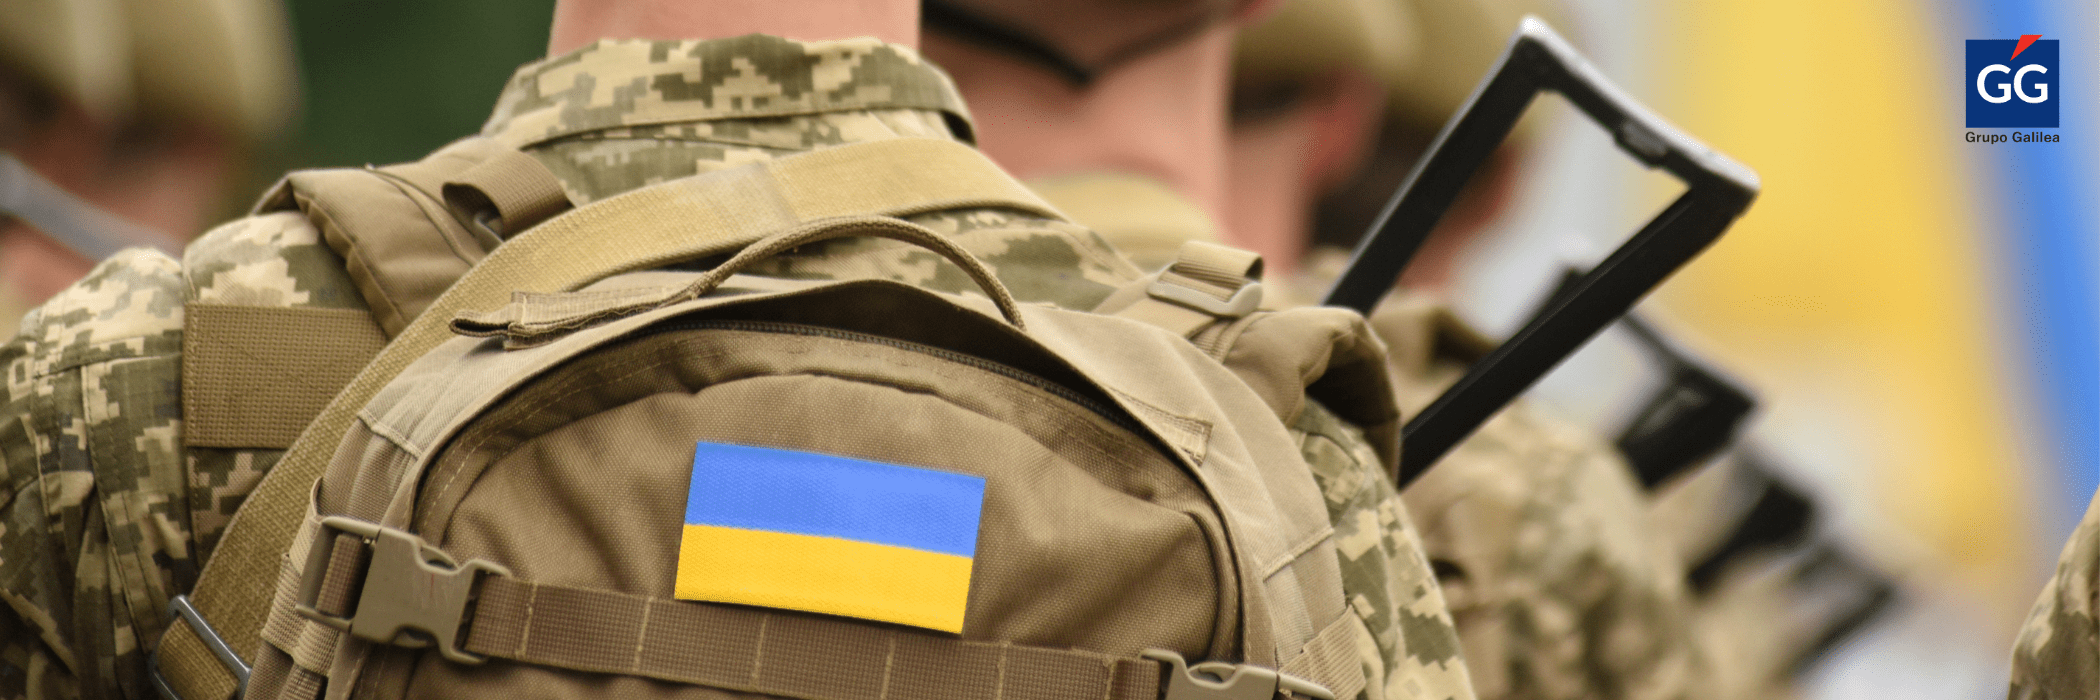 El impacto de la guerra de Ucrania llega también al seguro 1